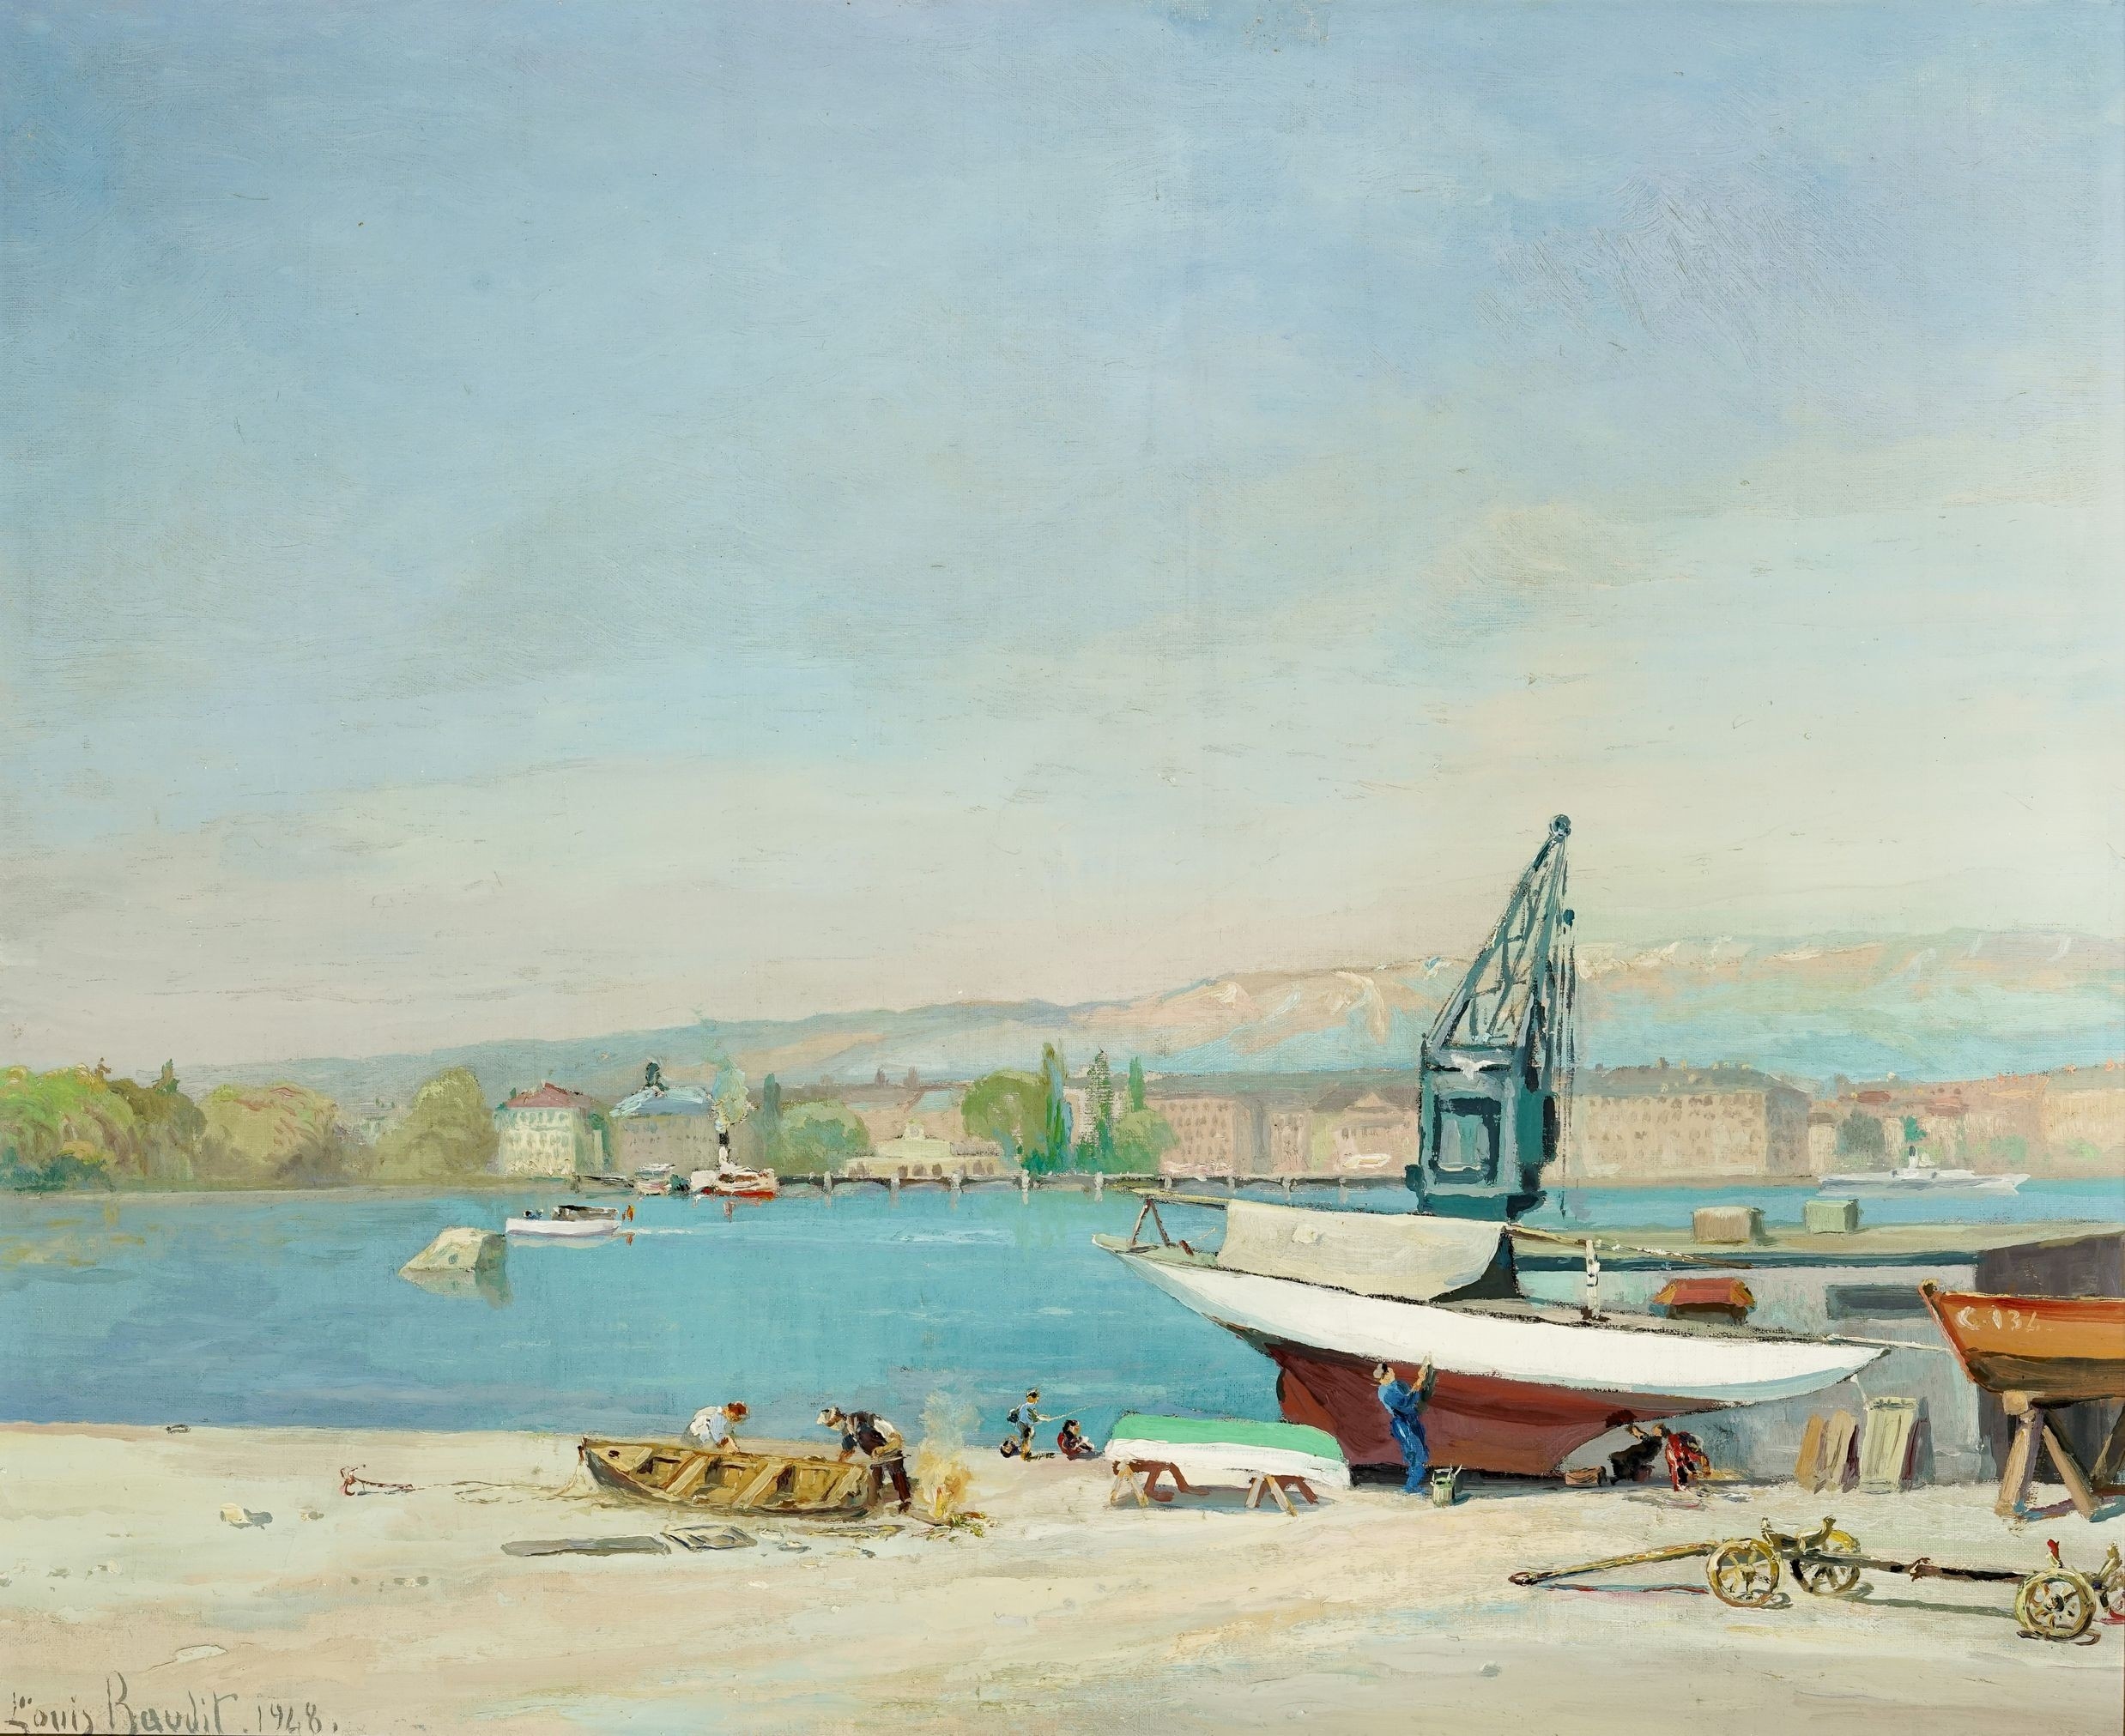 Port des Eaux Vives by Louis Baudit, 1948